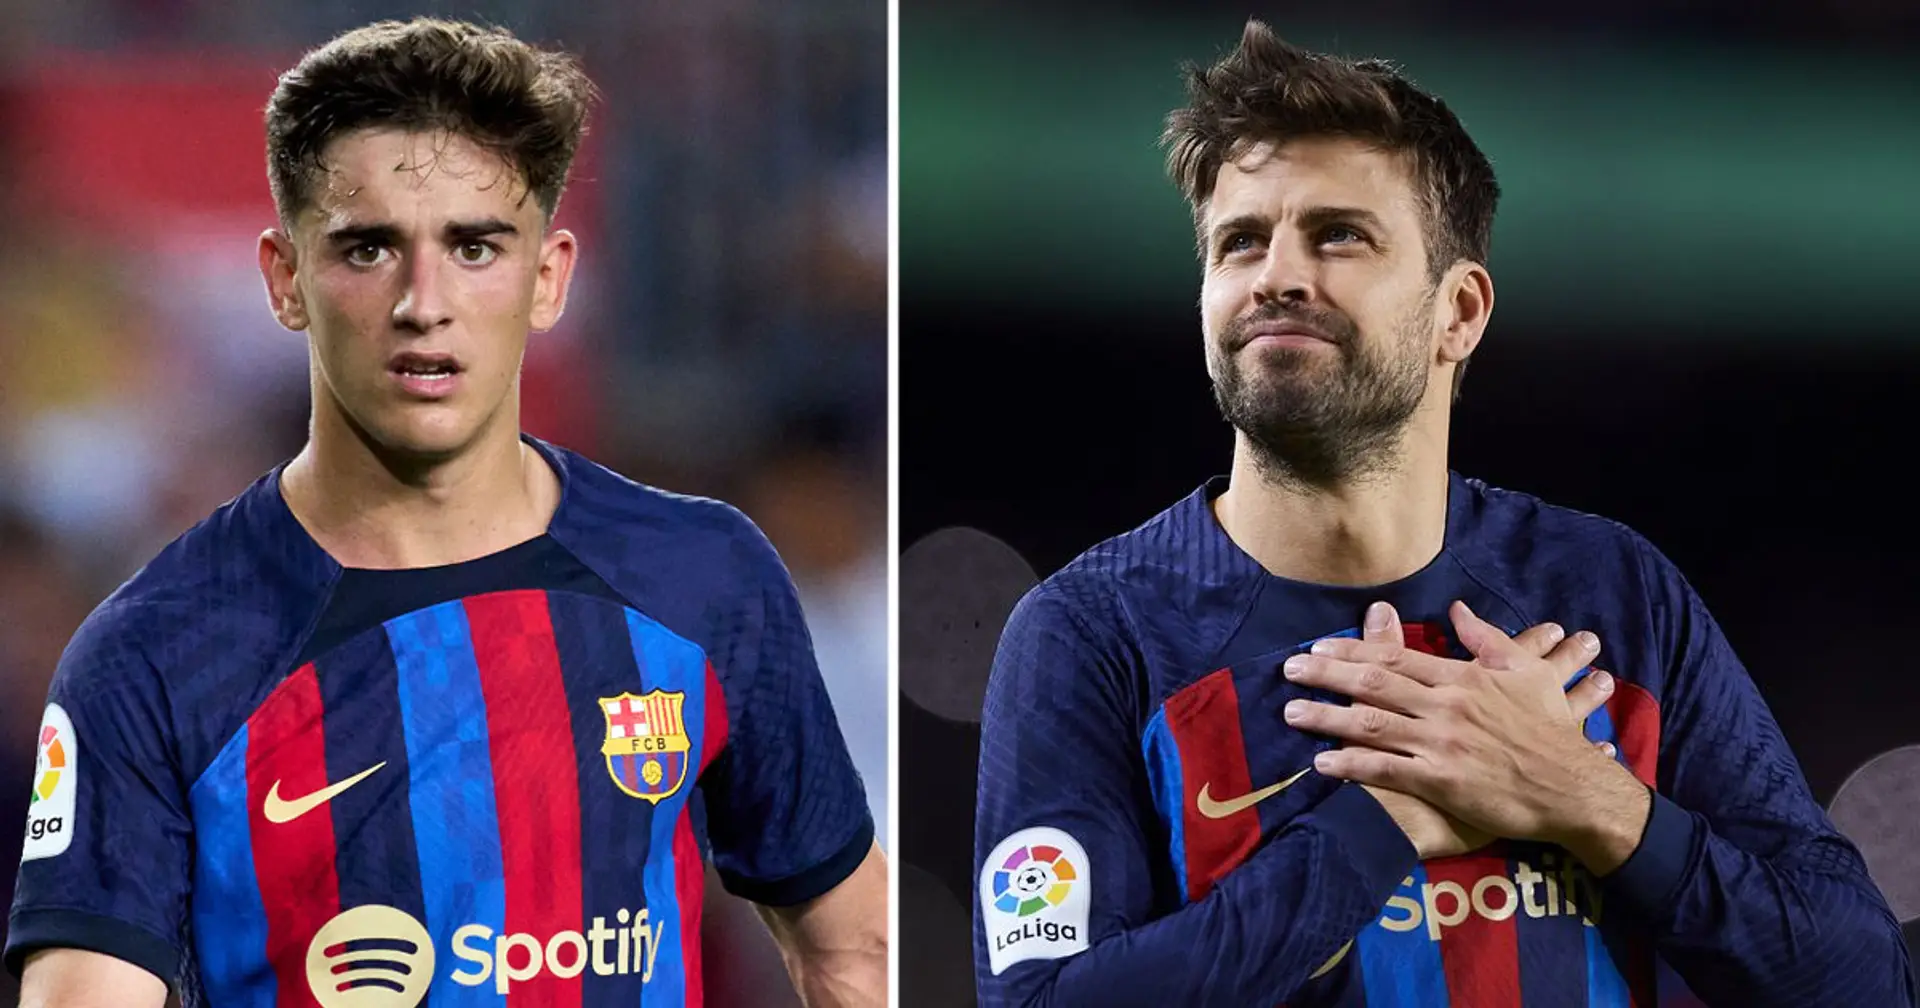 La retirada de Piqué permite al Barça ascender a 3 jóvenes al primer equipo